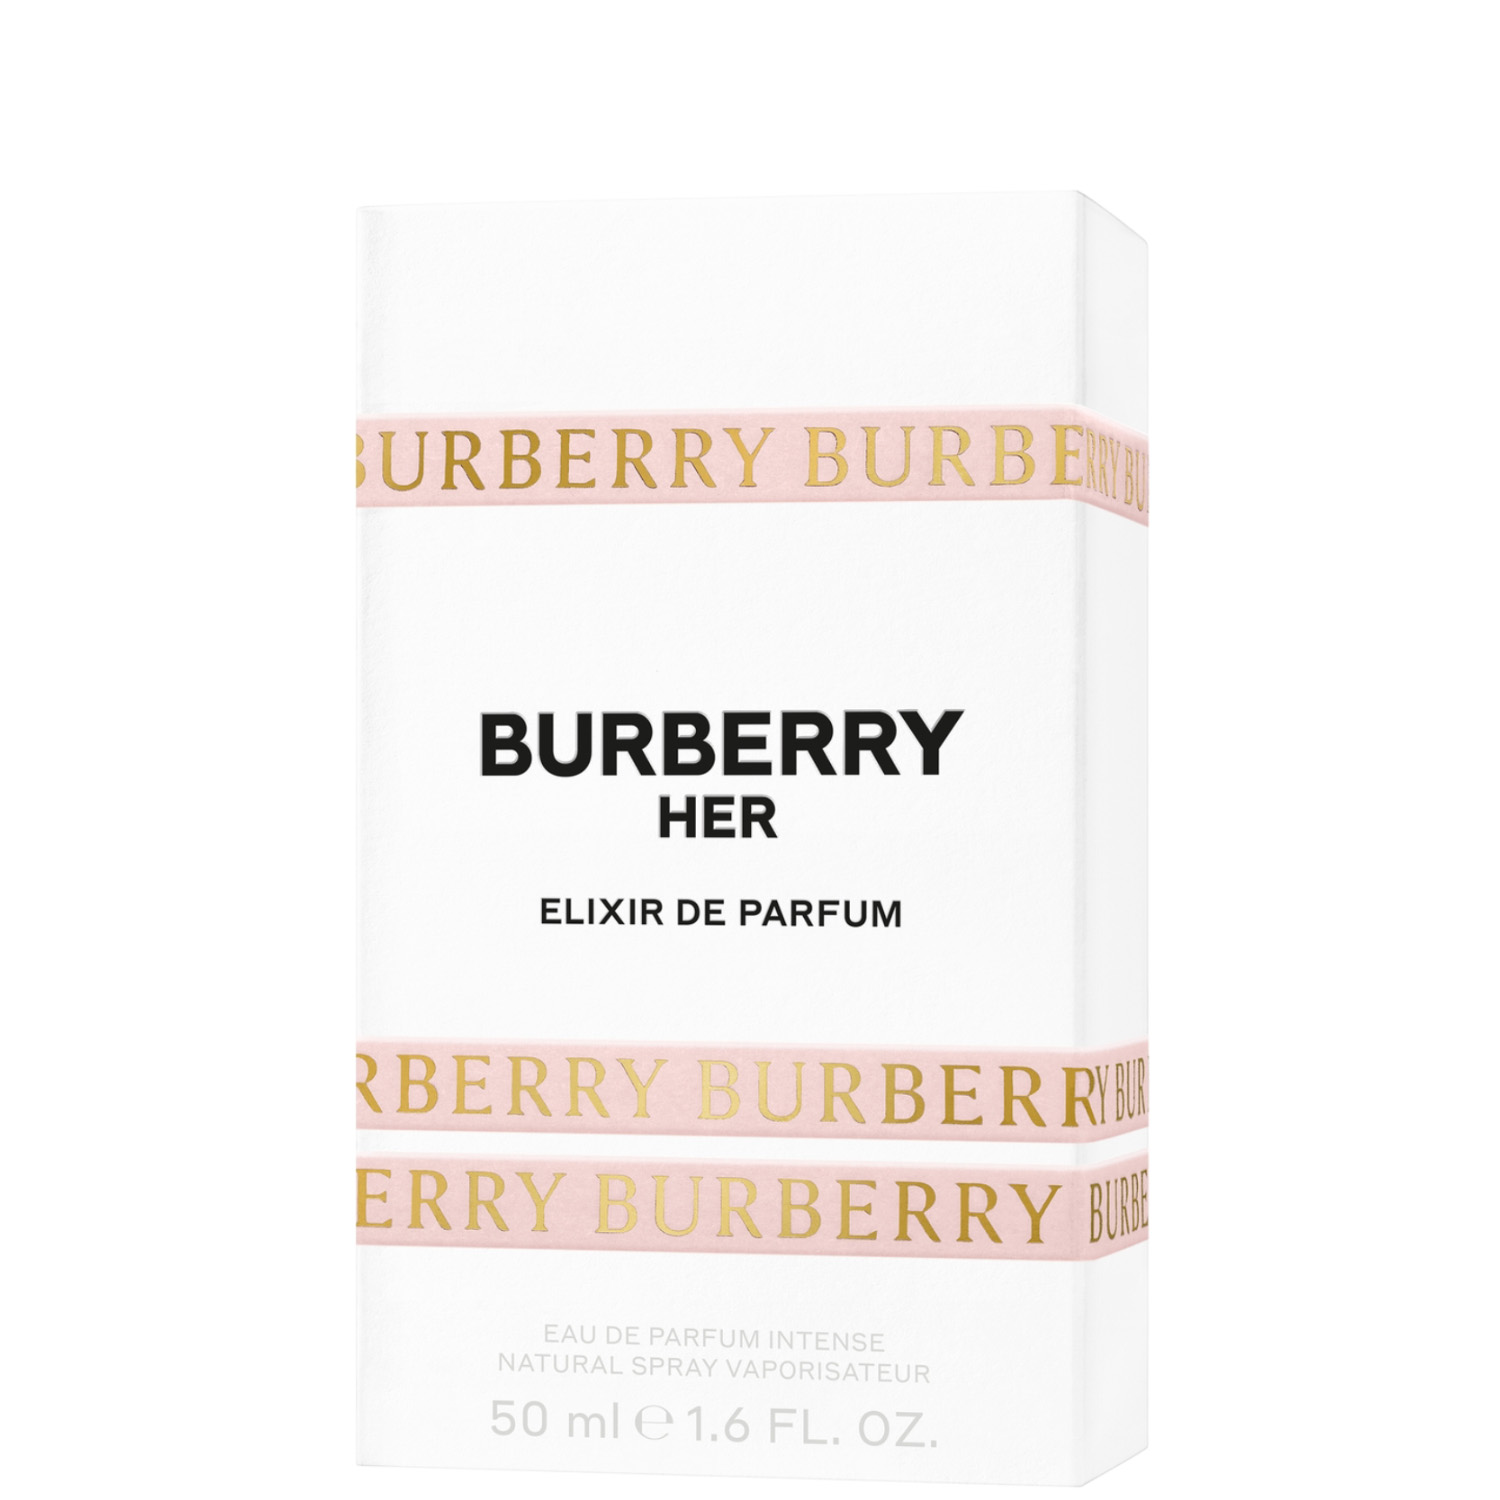 Burberry Her Elixir de Parfum Eau de Parfum Intense 50ml